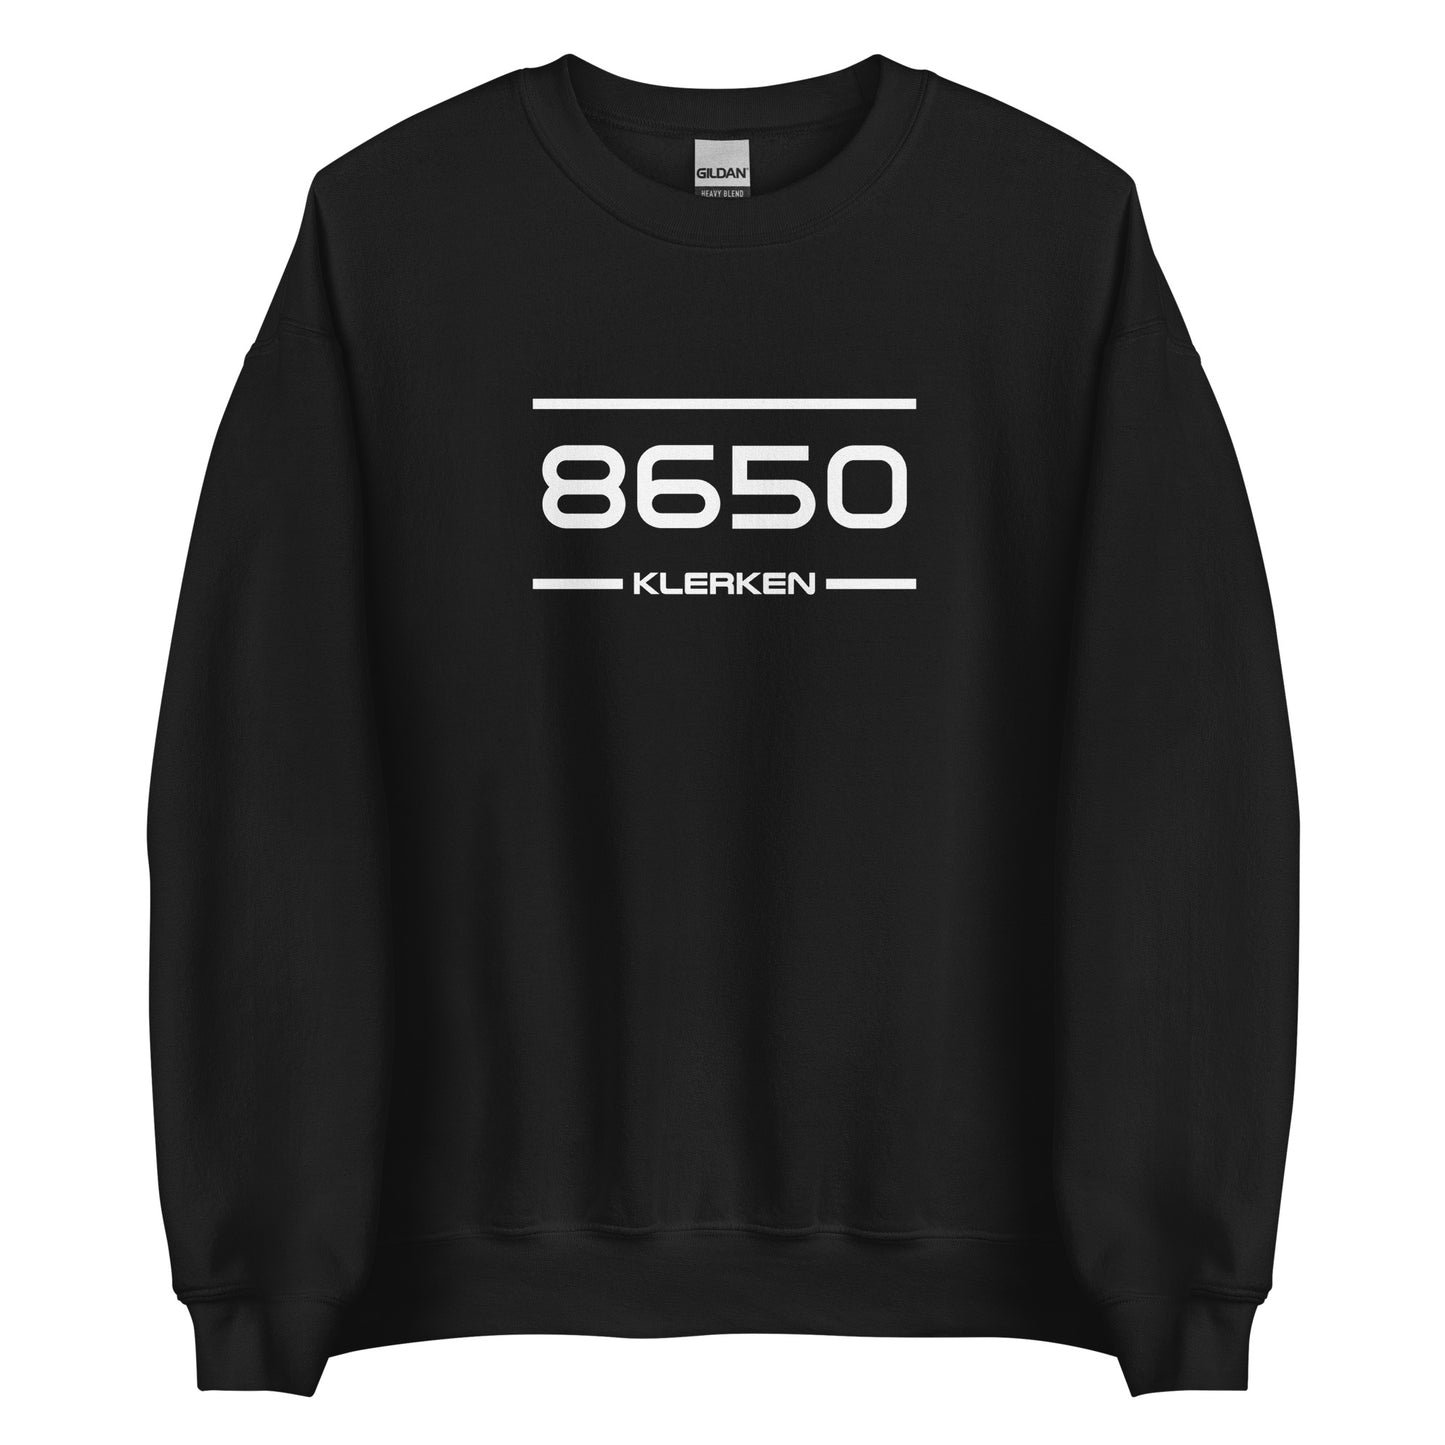 Sweater - 8650 - Klerken (M/V)